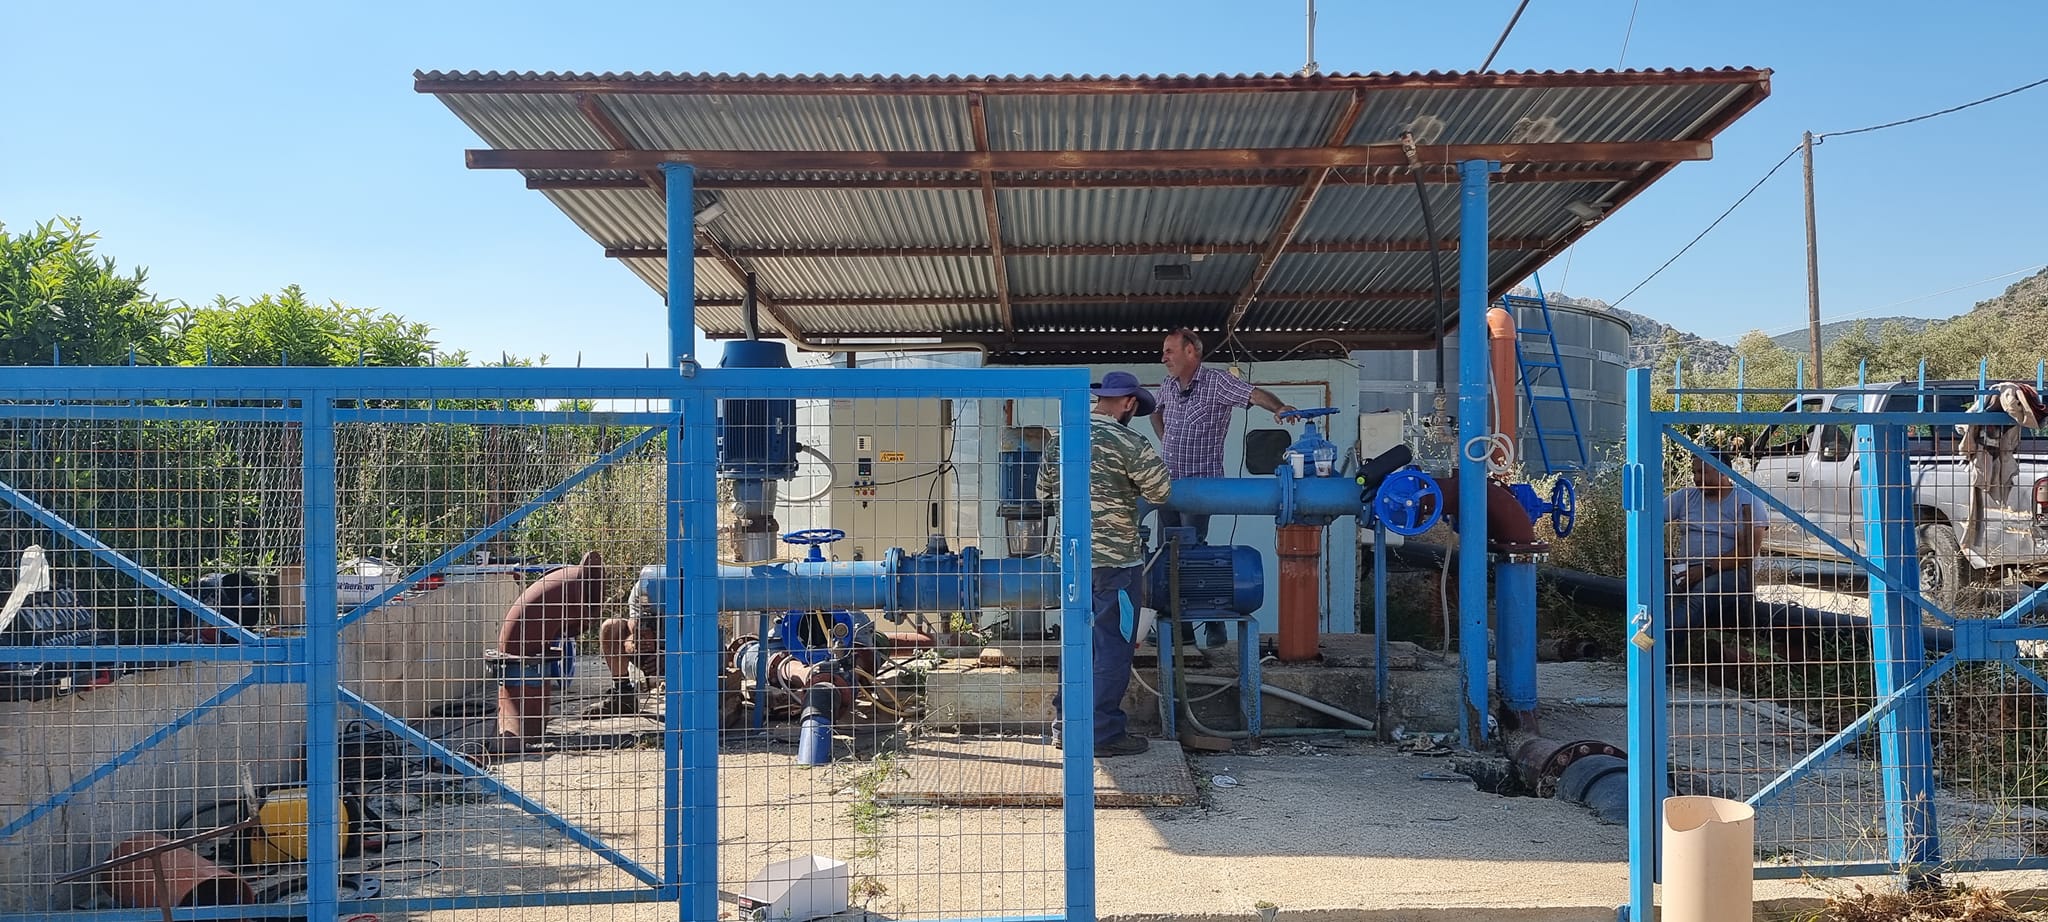 ΔΕΥΑΝ: Νέα δεξαμενή νερού θα τροφοδοτεί τον πρώην δήμο Ασίνης